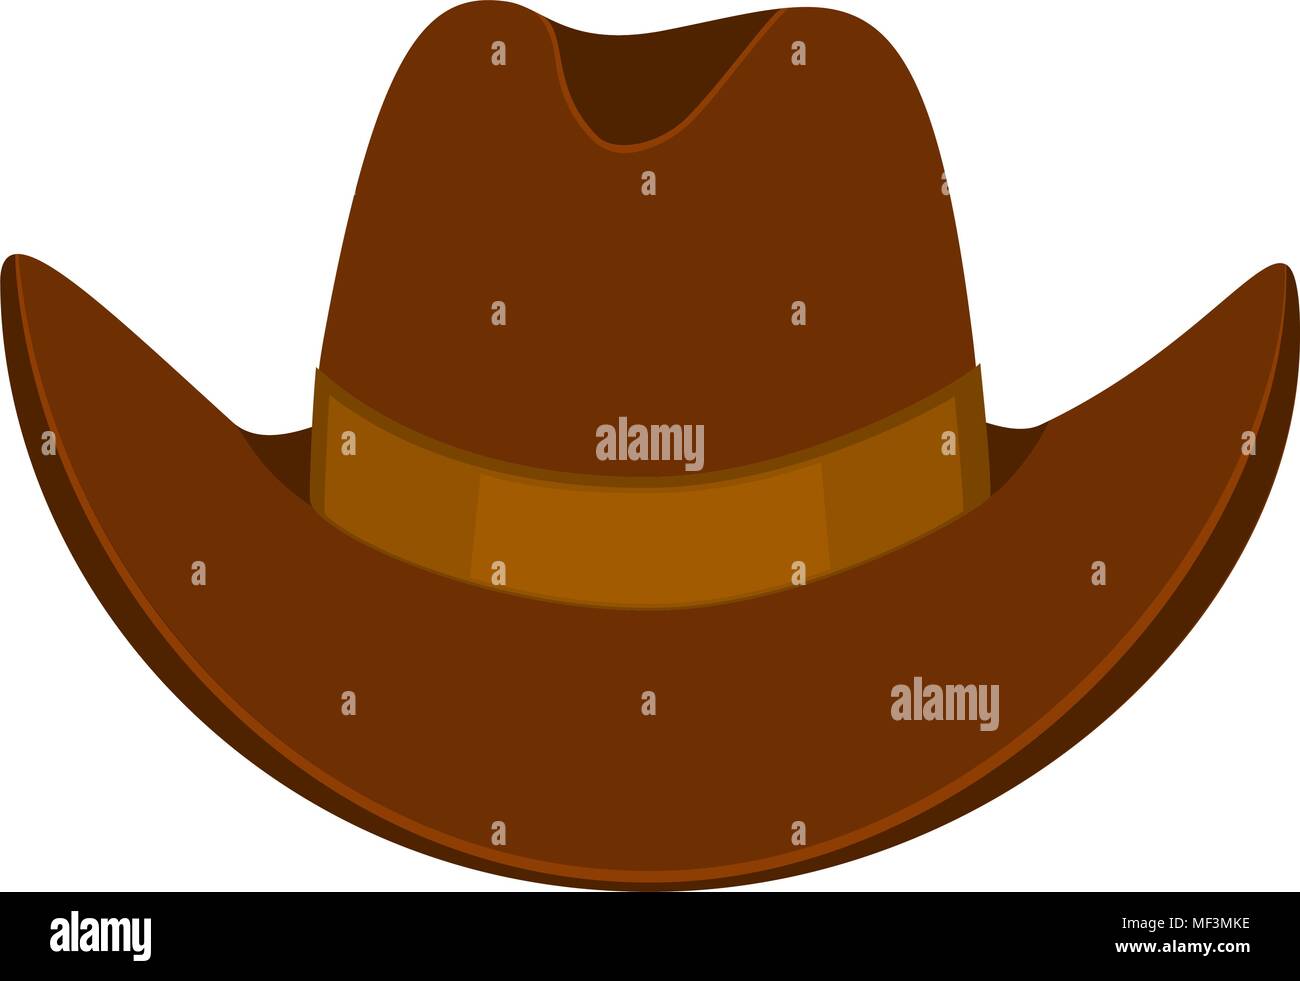 Colorful cartoon cowboy hat Stock Vector